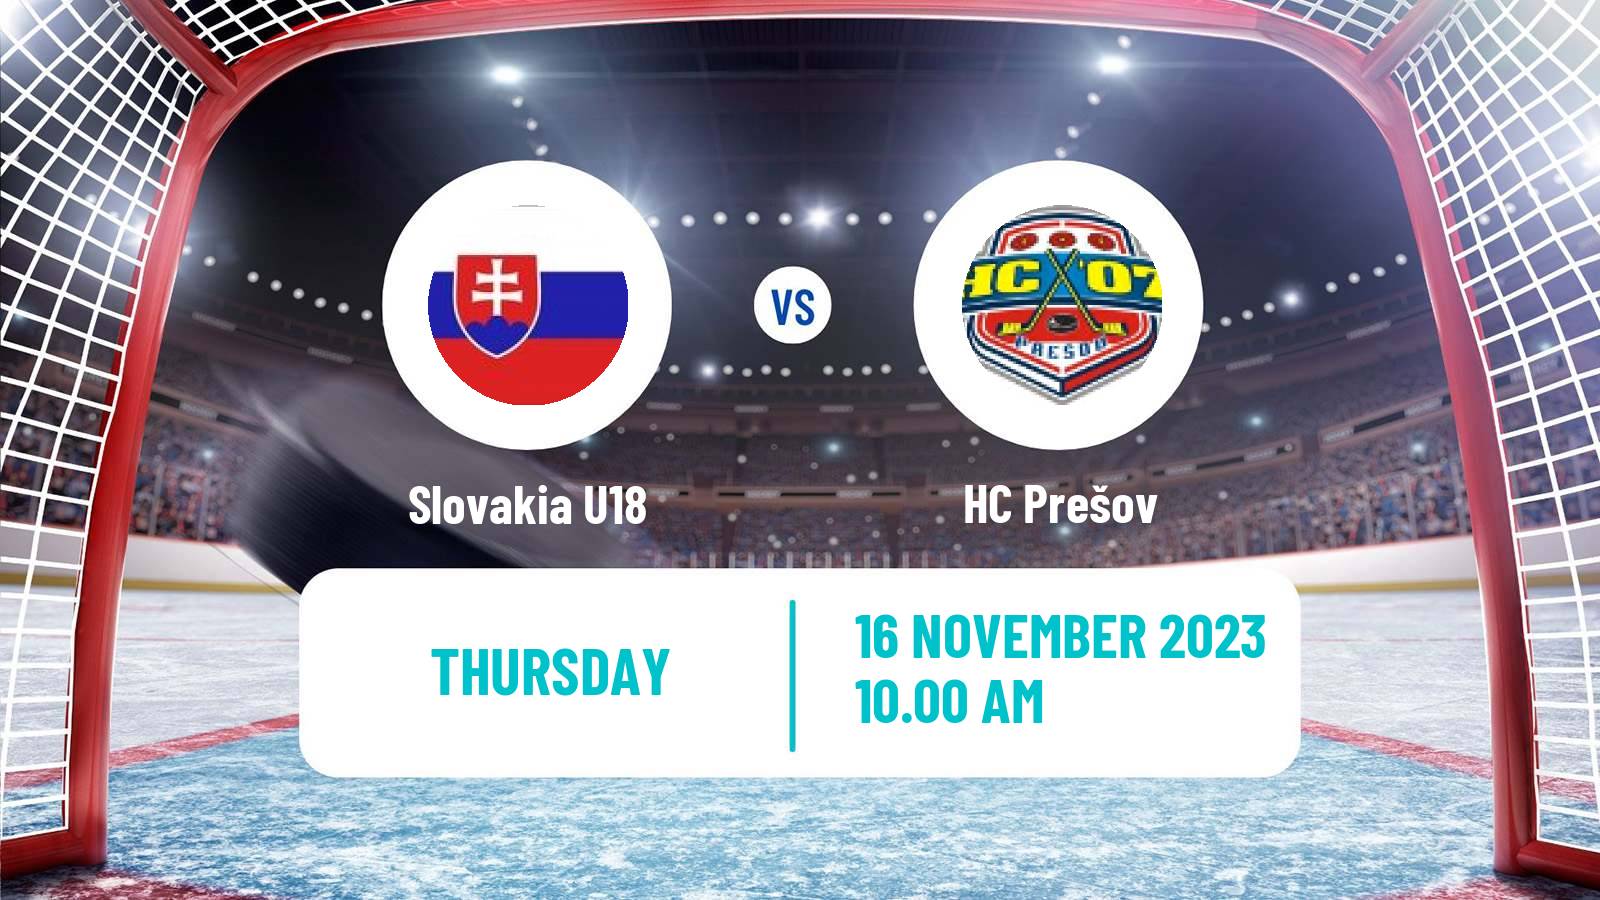 Hockey Slovak 1 Liga Hockey Slovakia U18 - Prešov